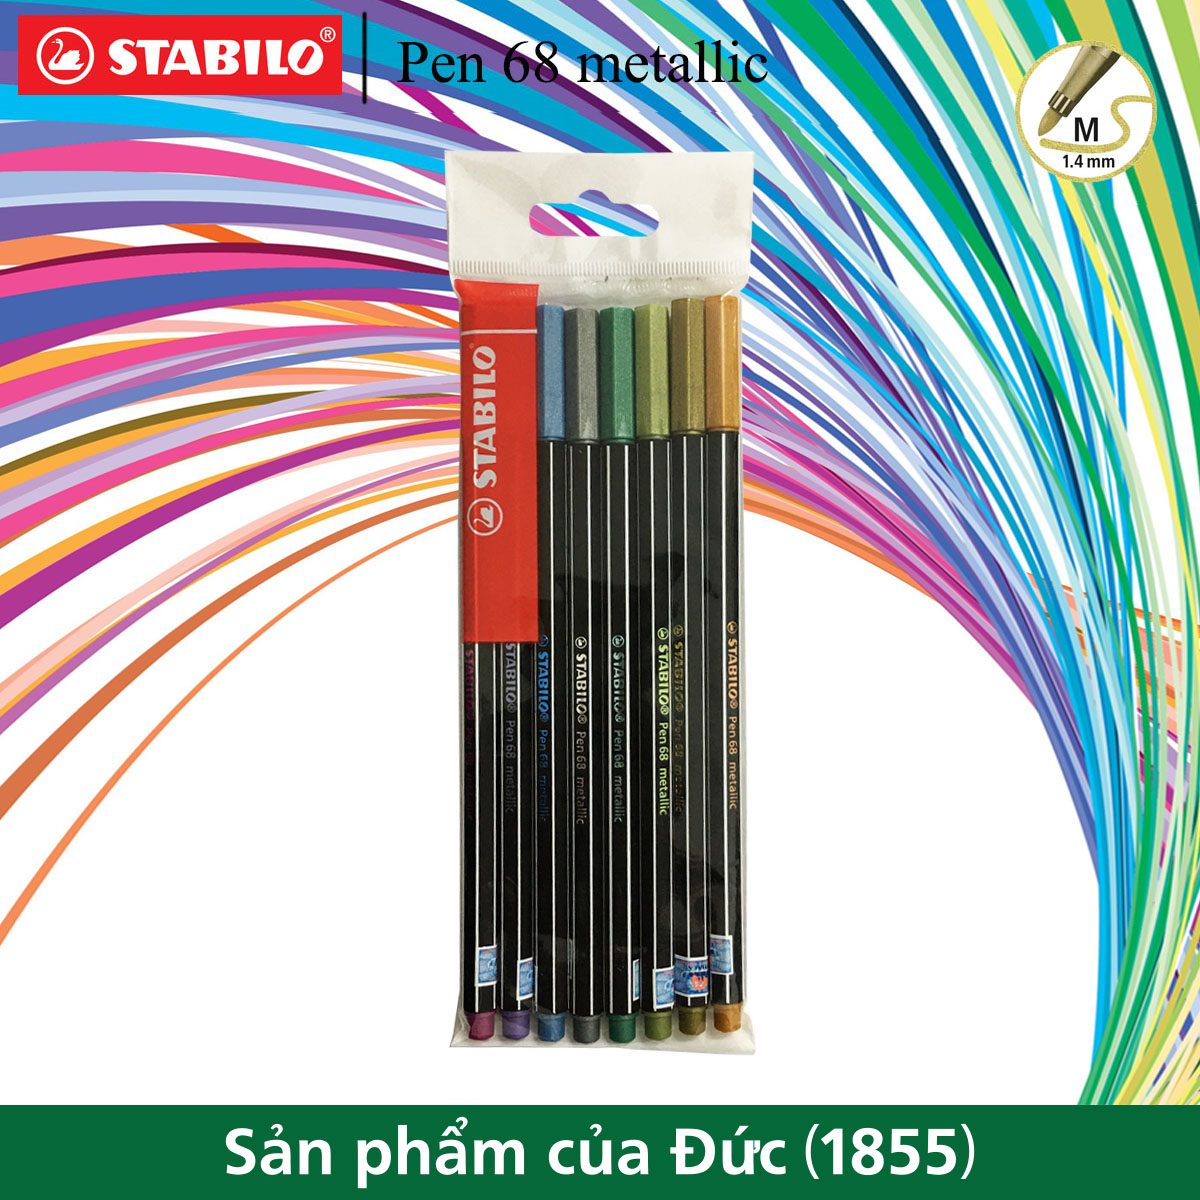 Bộ 8 bút lông nhũ STABILO Pen 68 metallic